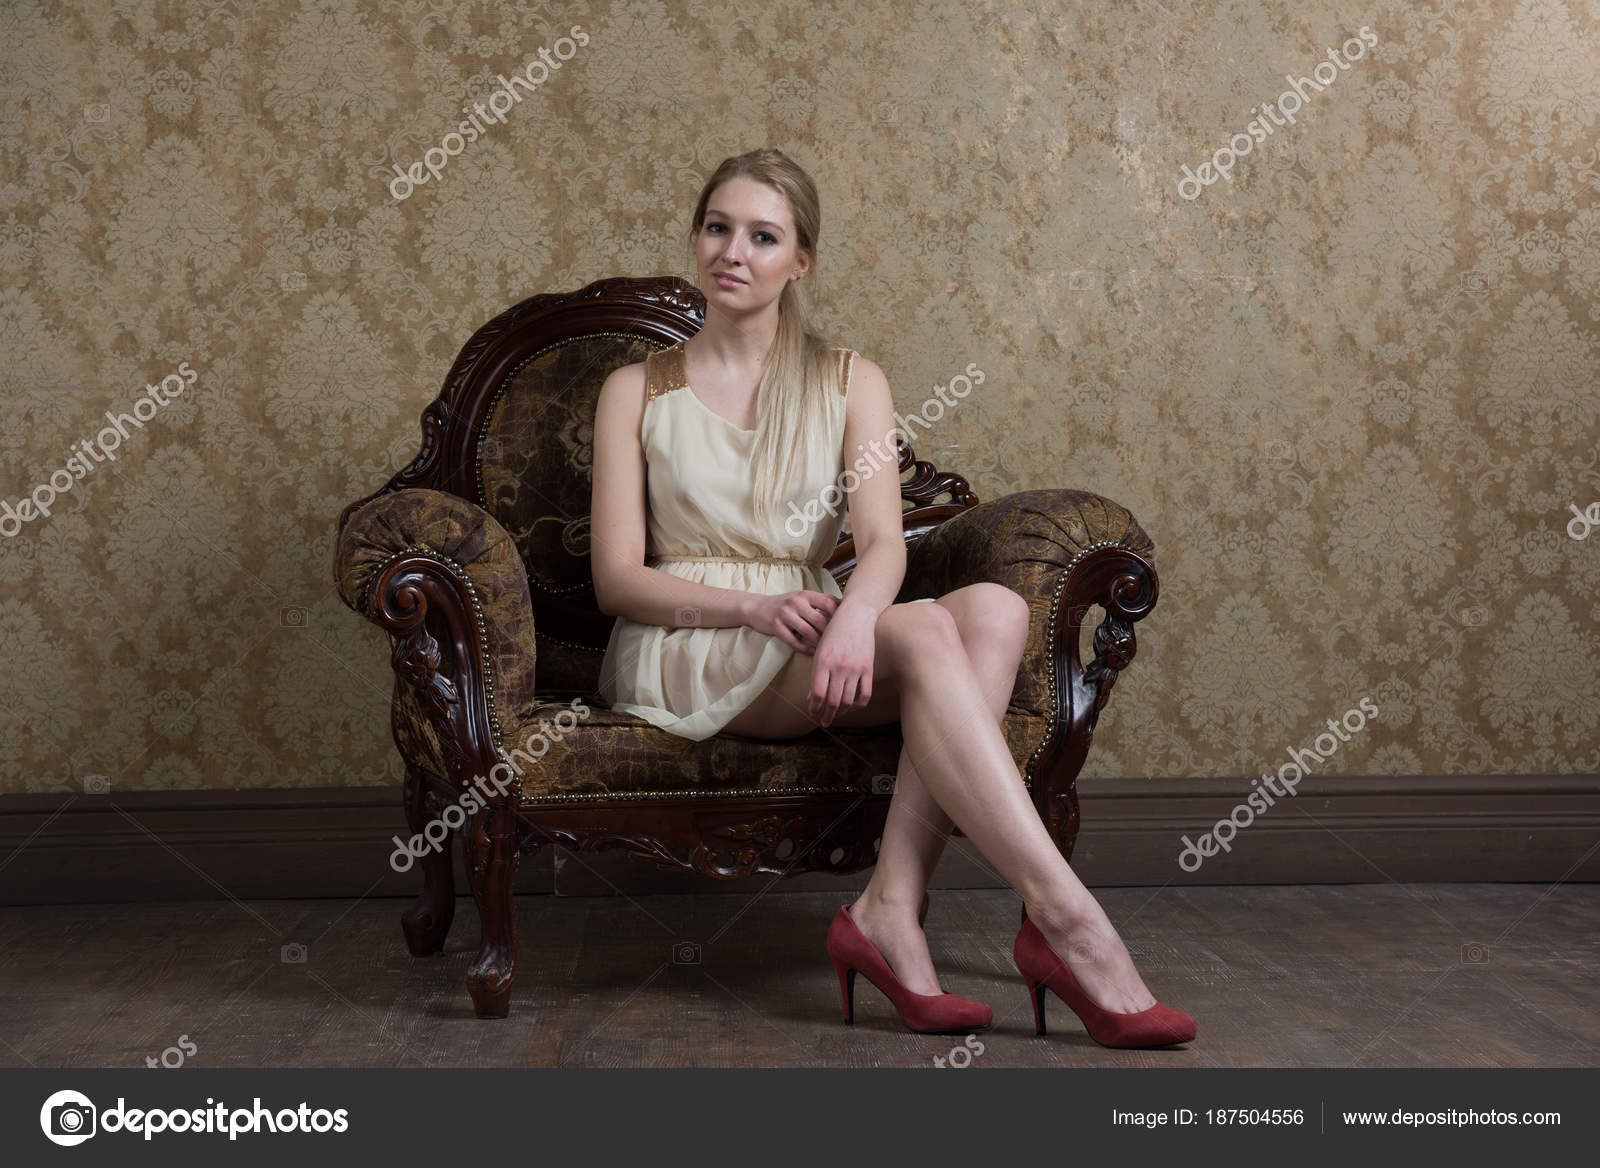 https://st3.depositphotos.com/10086424/18750/i/1600/depositphotos_187504556-stock-photo-young-beautiful-girl-posing-studio.jpg